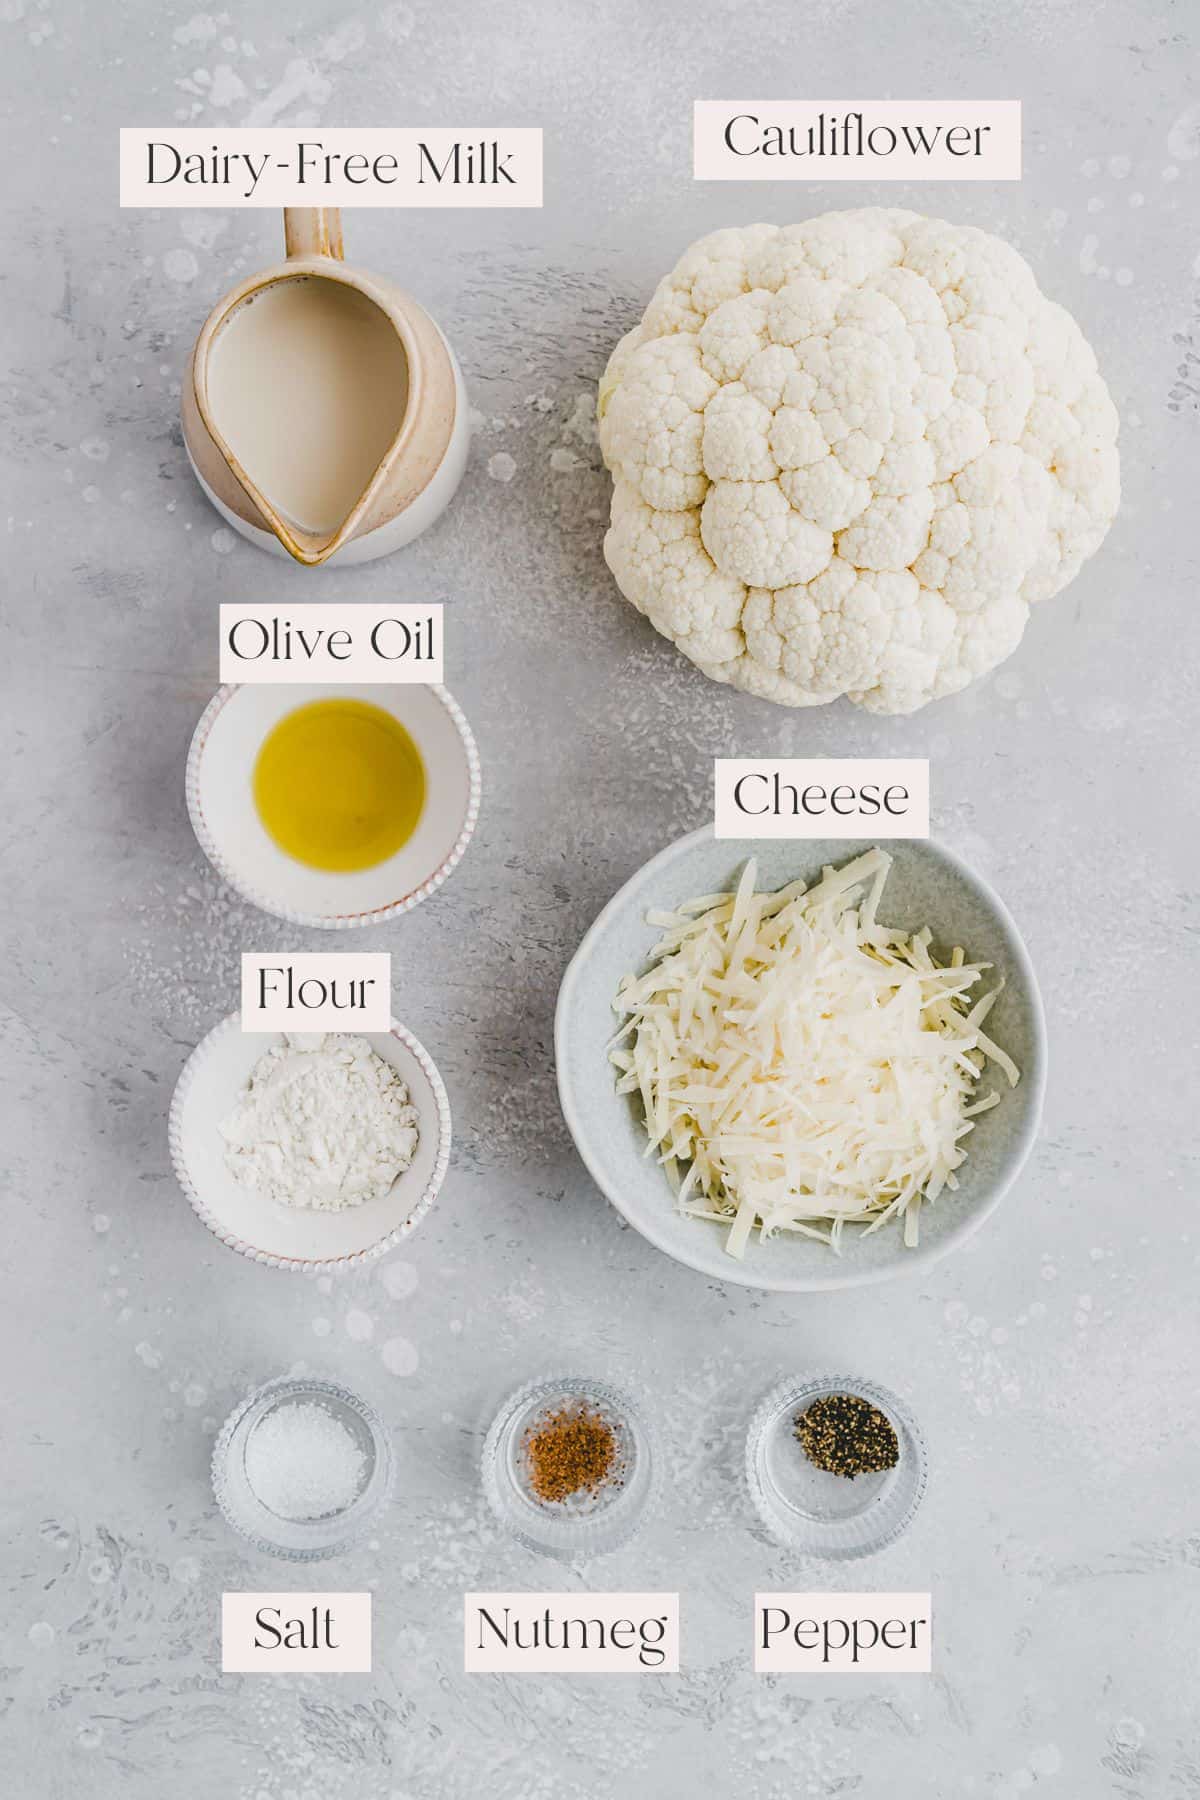 Caulifower Cheese Casserole Ingredients